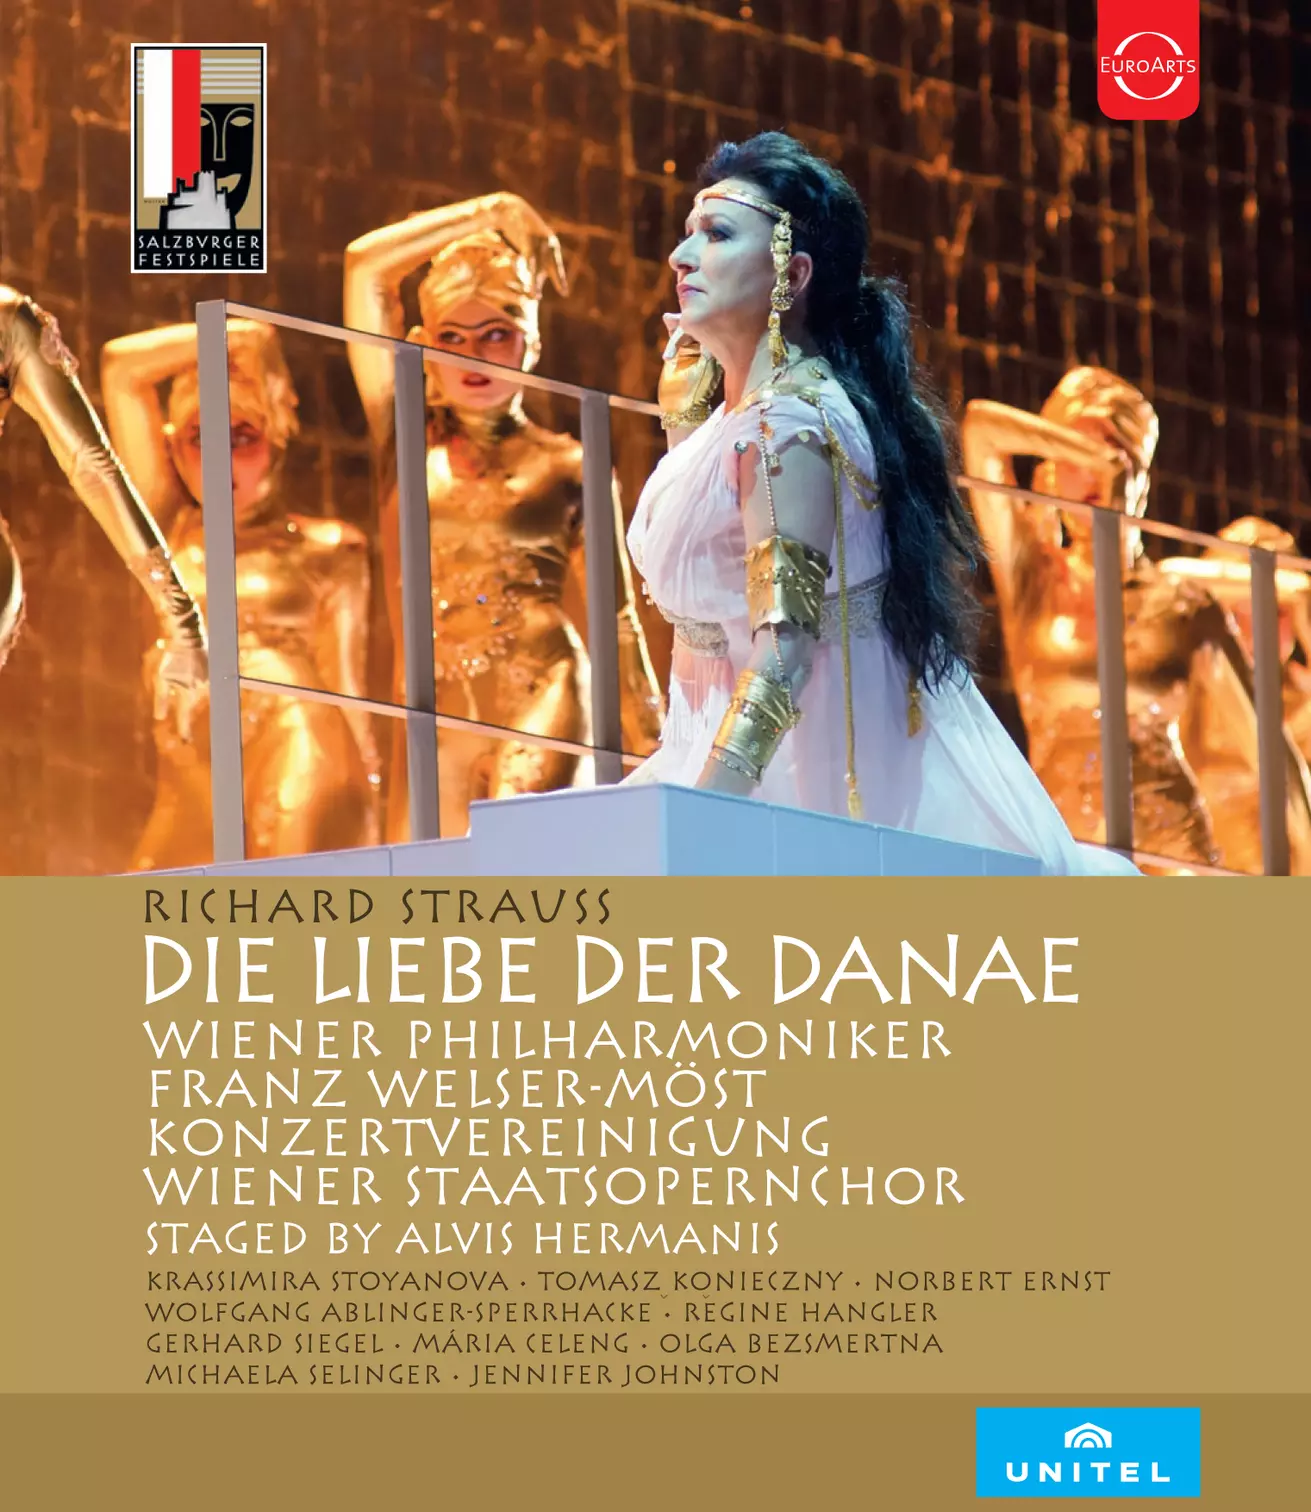 Salzburger Festspiele 2016 - Strauss: Die Liebe der Danae